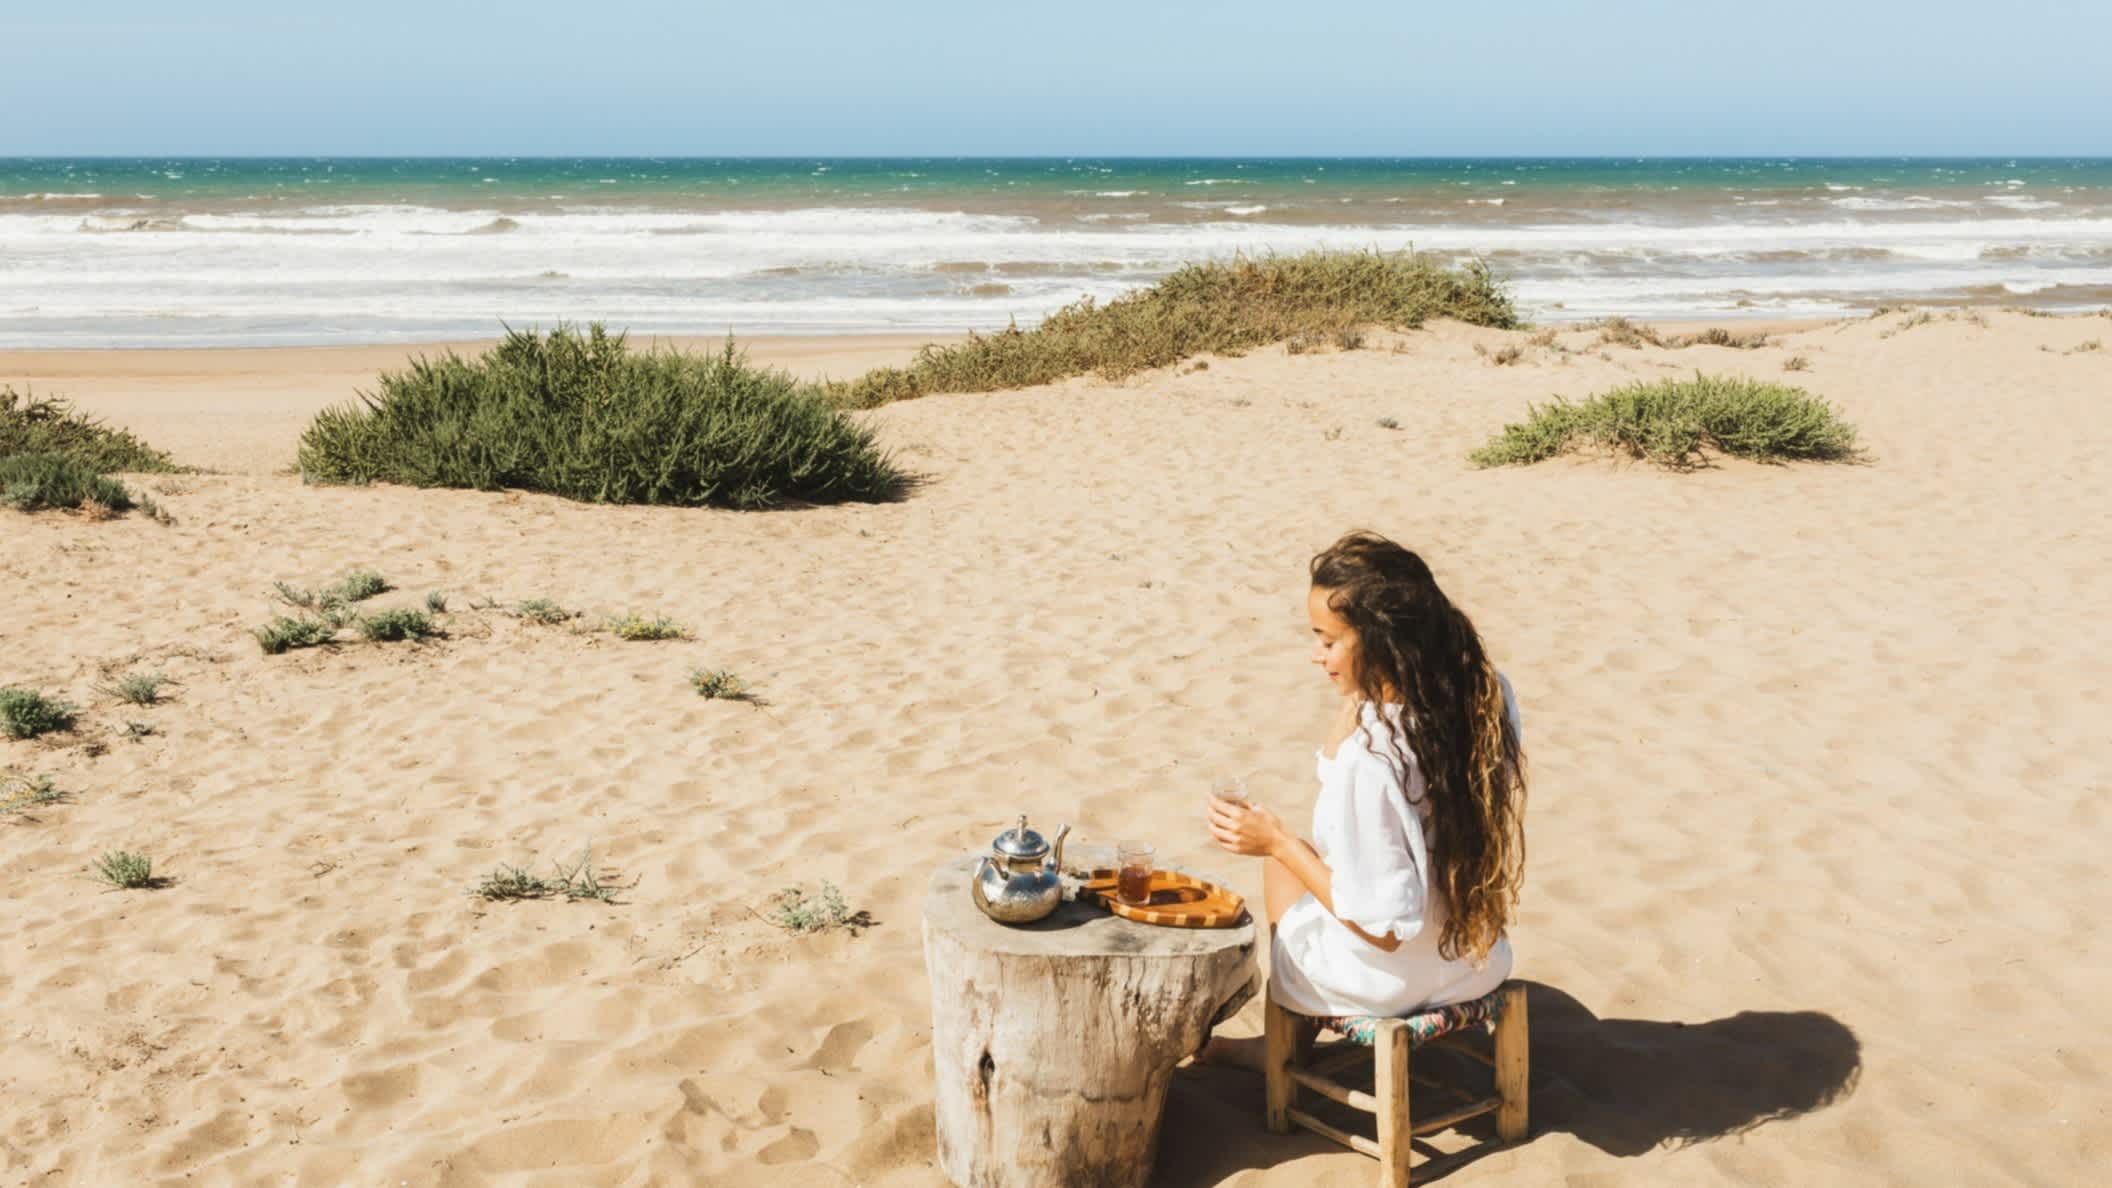 Frau genießt marokkanischen Tee am Sandstrand des Ozeans in Marokko

